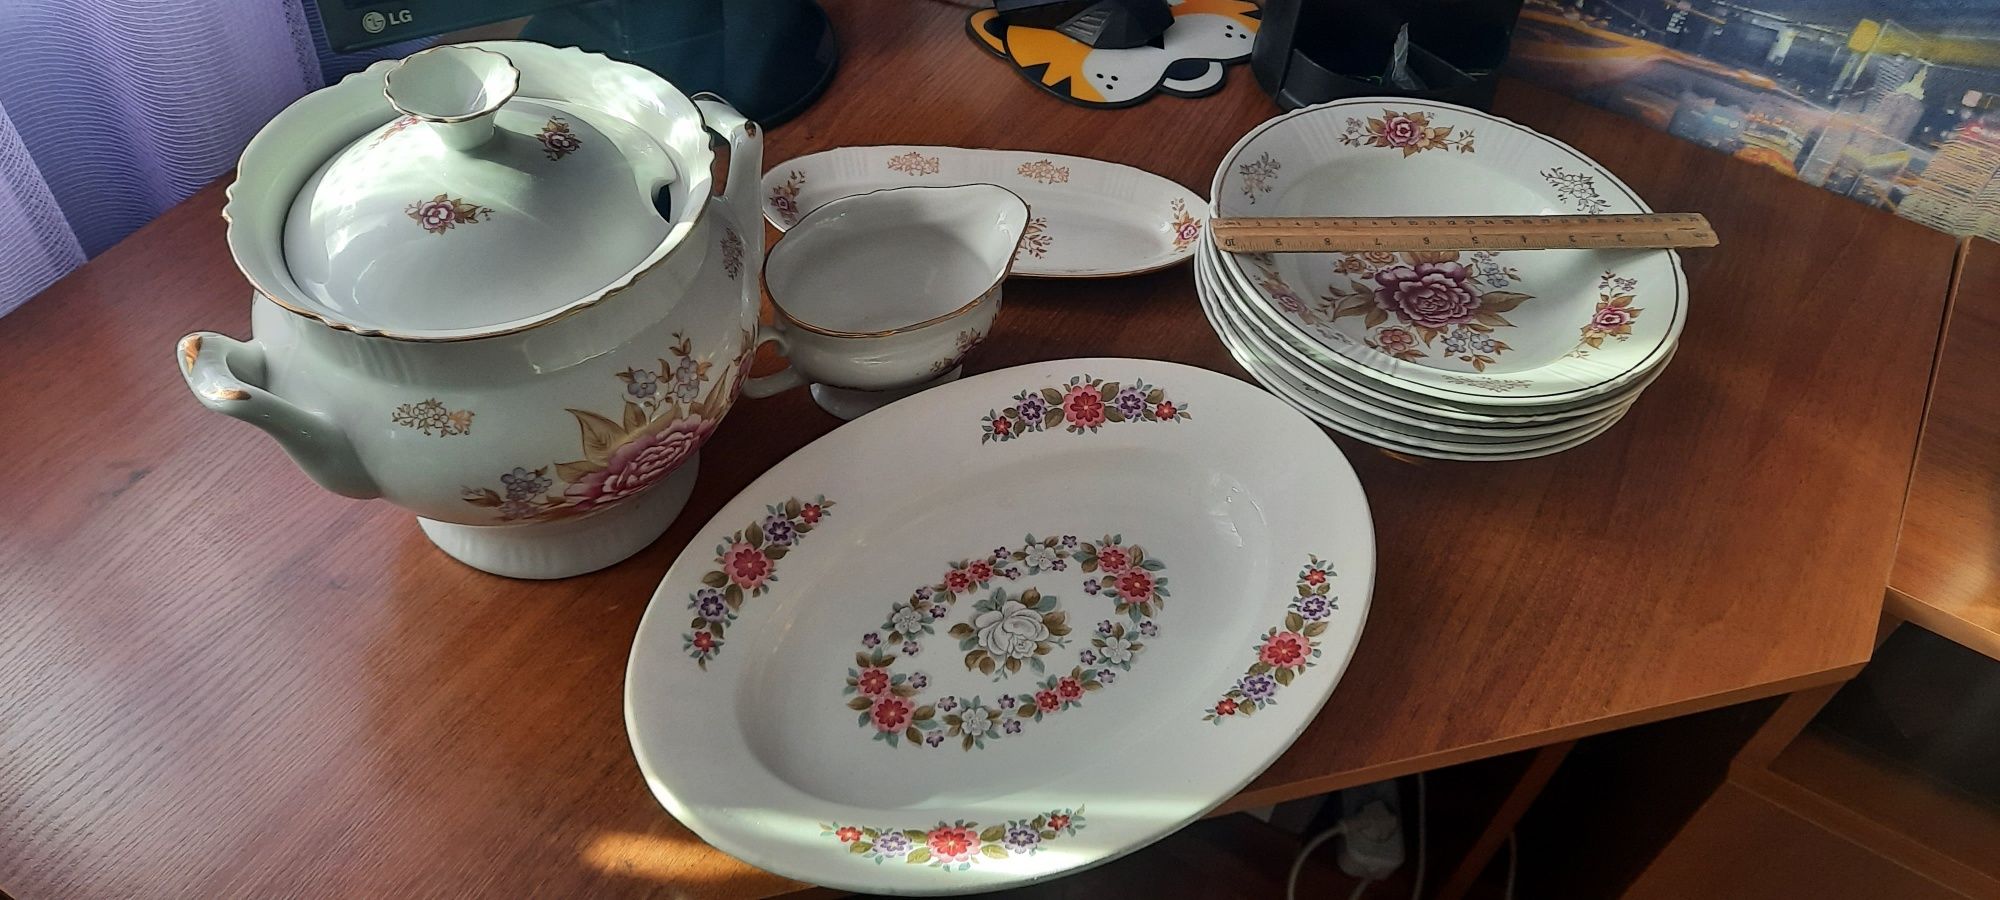 разнообразная посуда тарелки